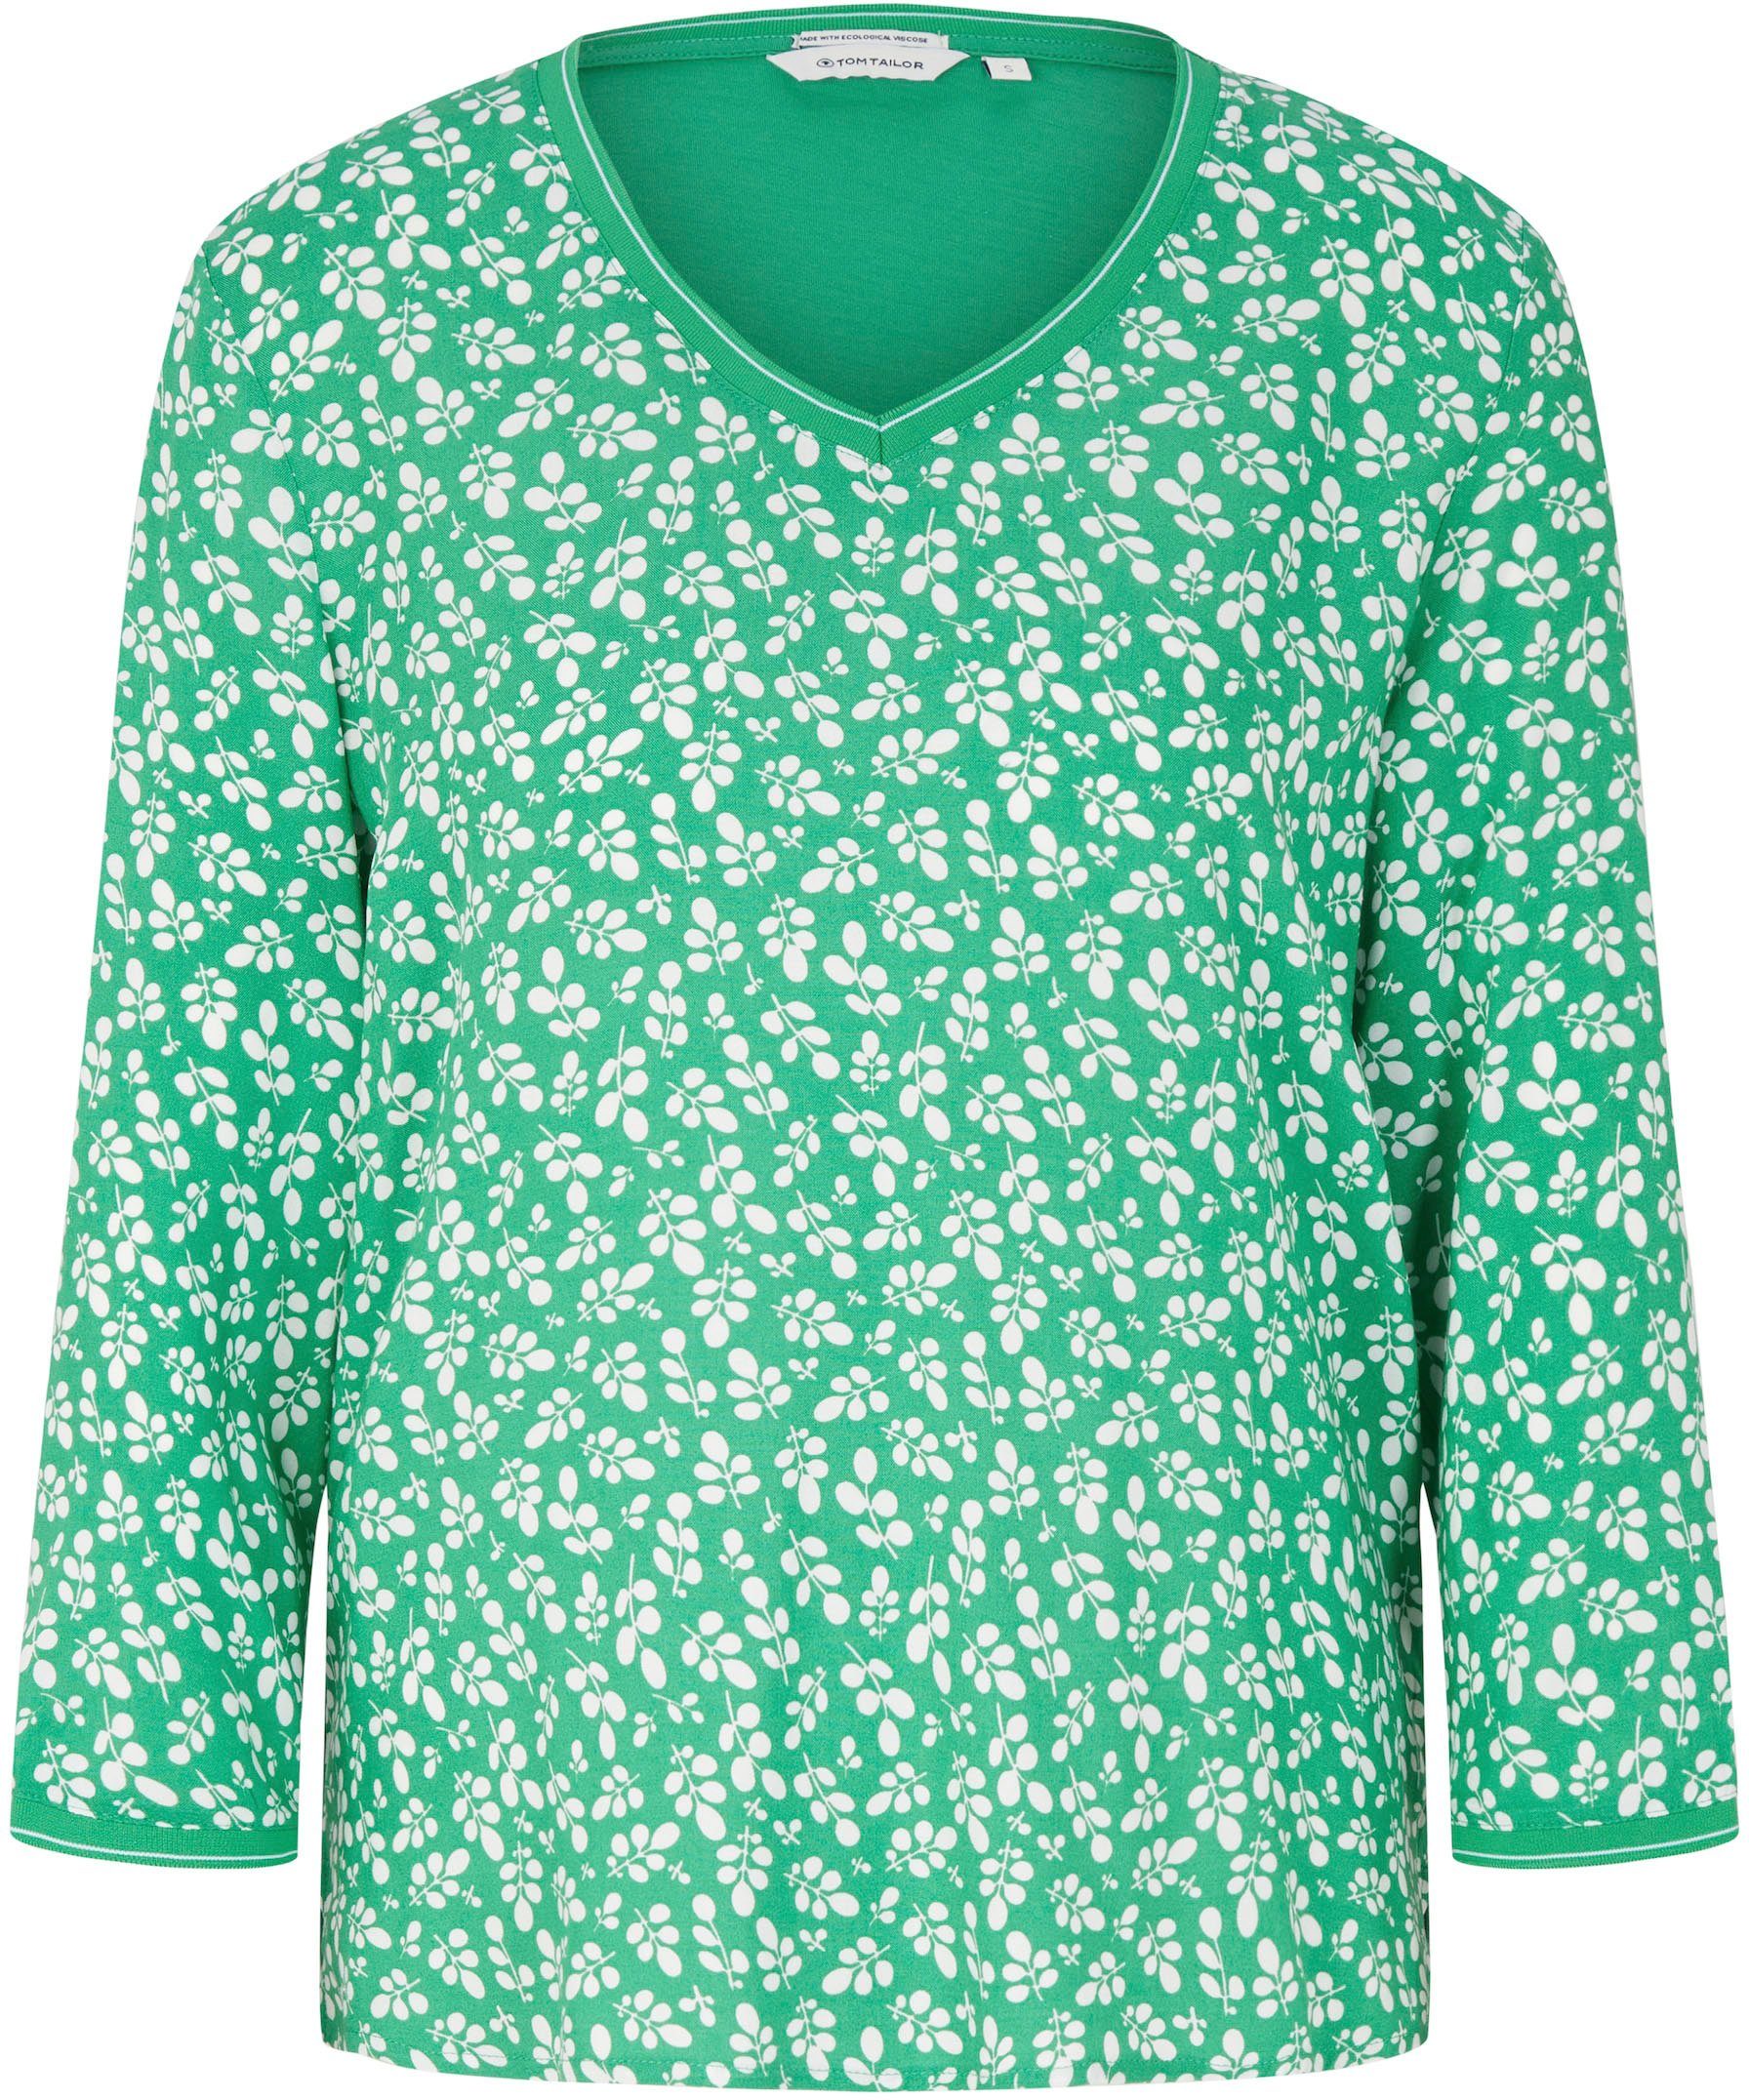 Bedruckung TOM flor mit T-Shirt green TAILOR